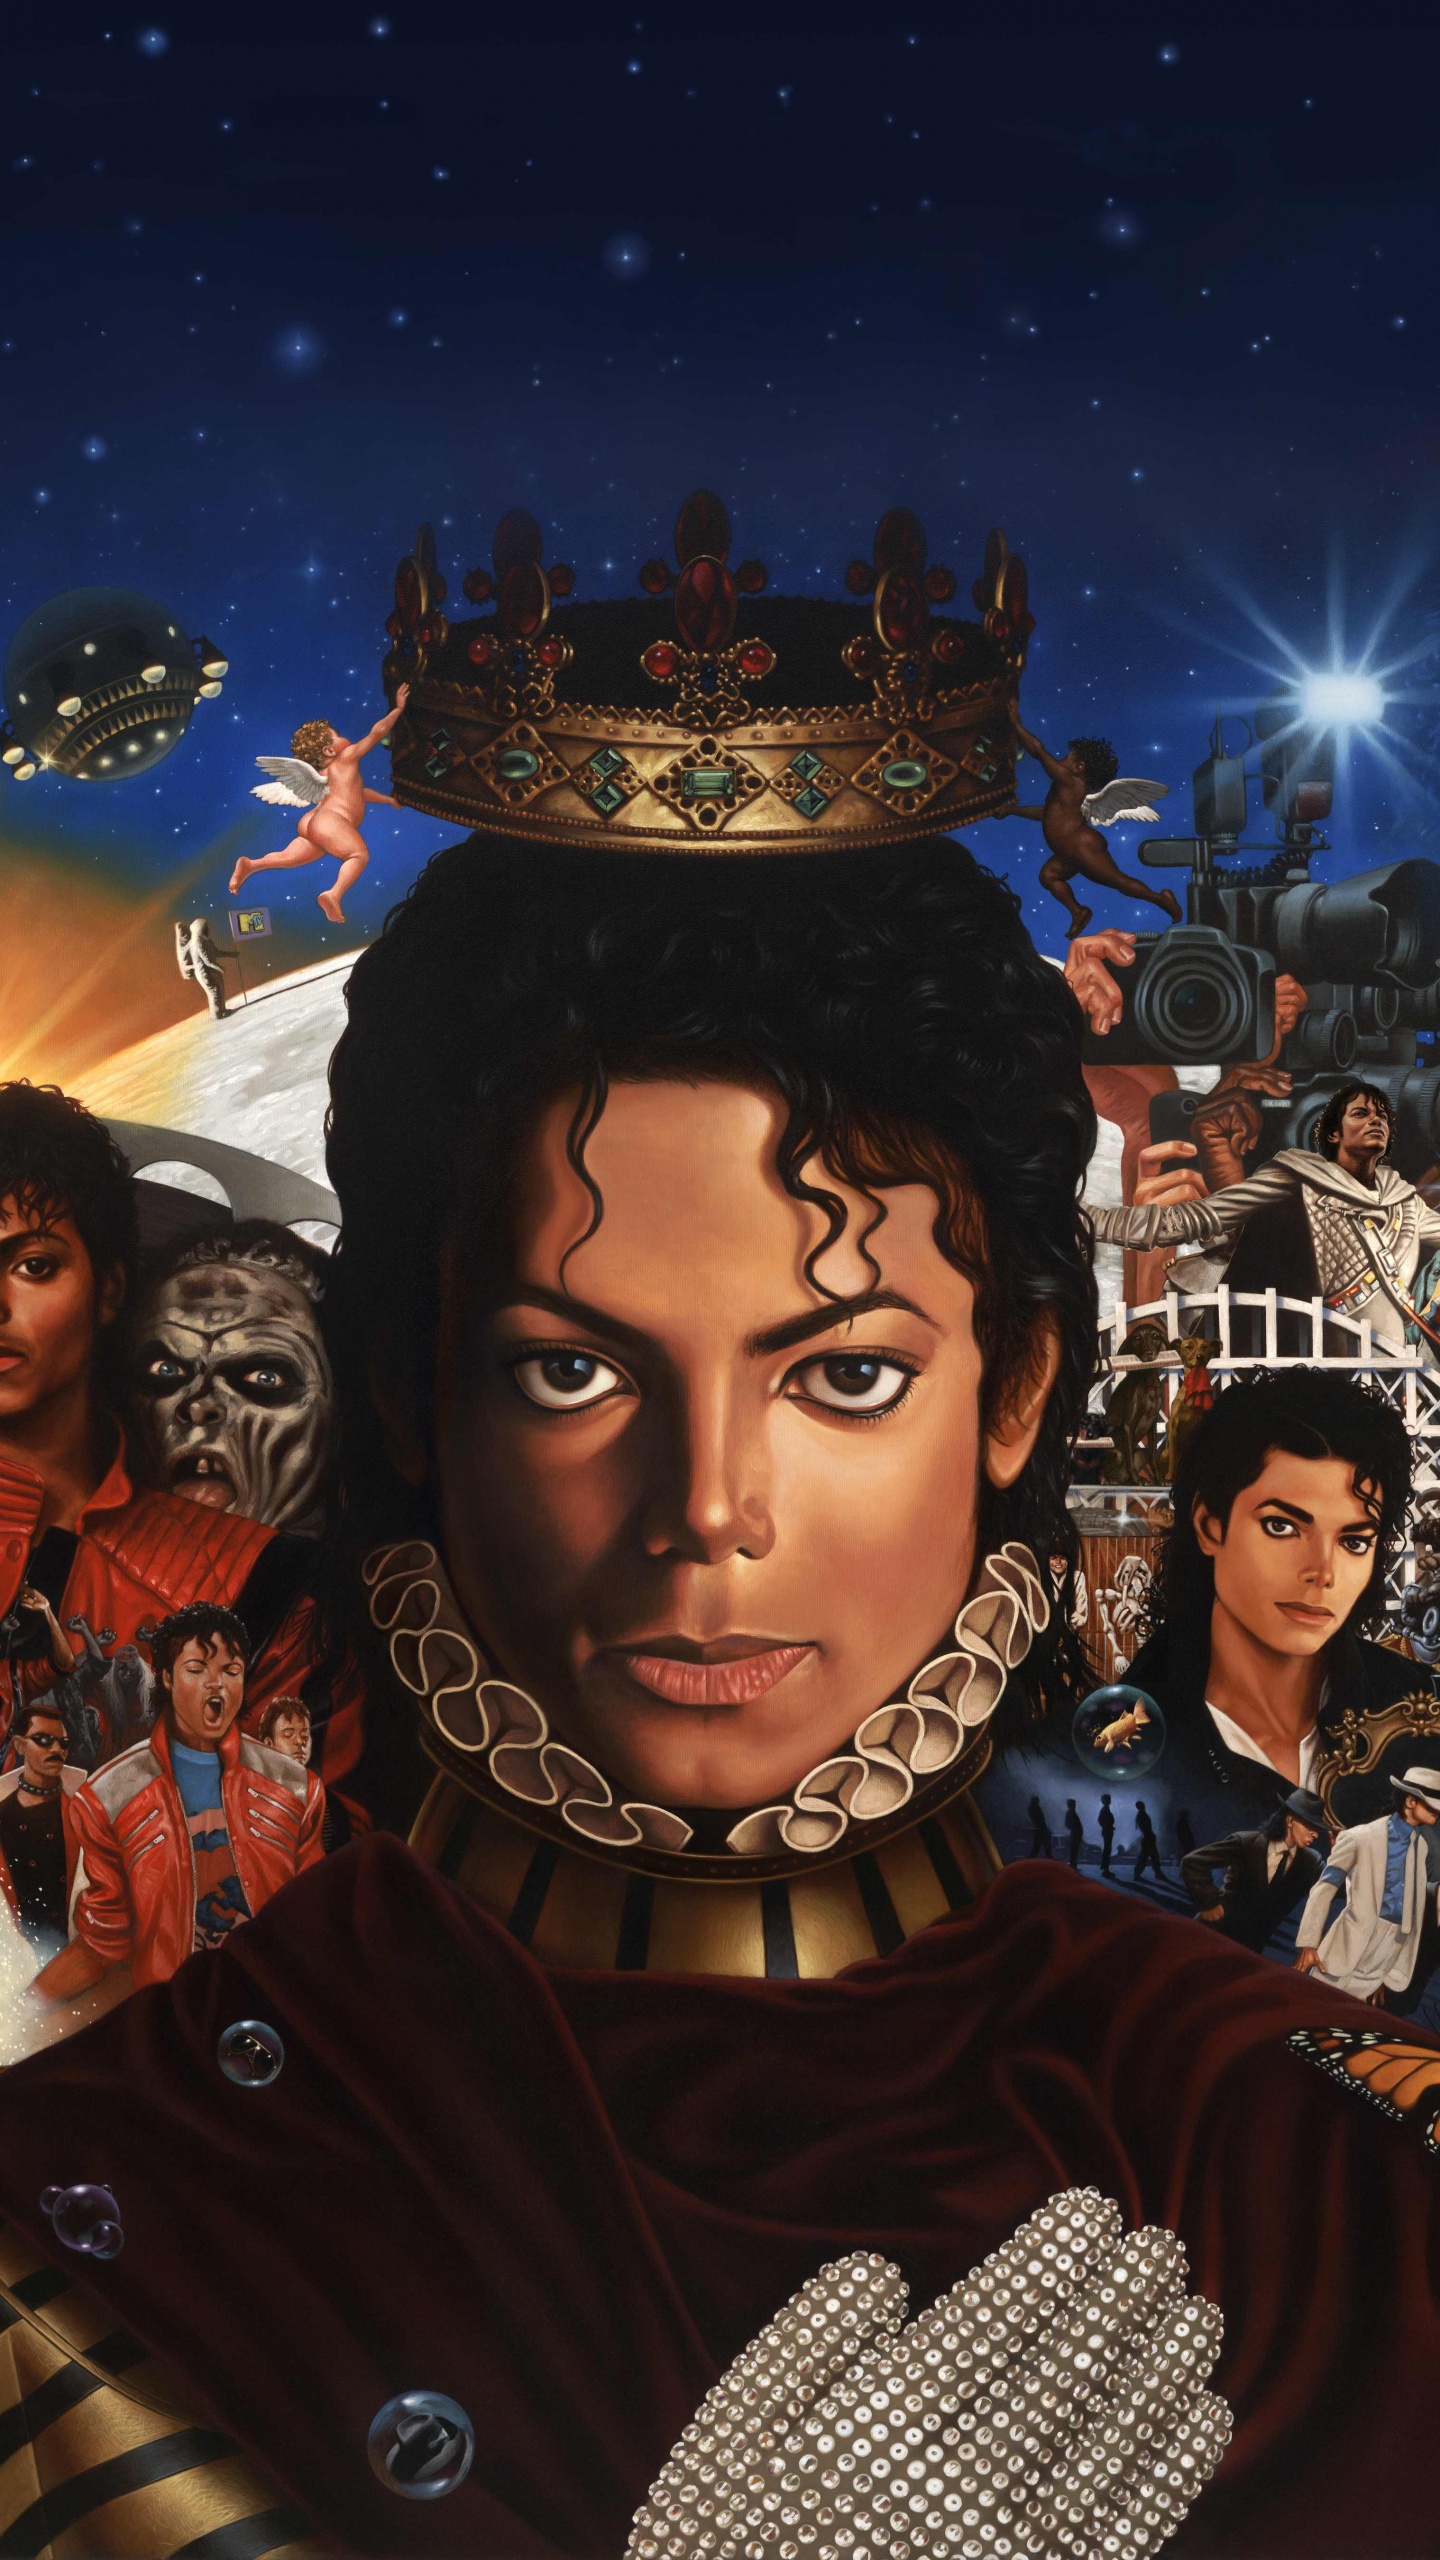 迈克尔*杰克逊, 迈克尔, 专辑, 艺术, 空间 壁纸 1440x2560 允许